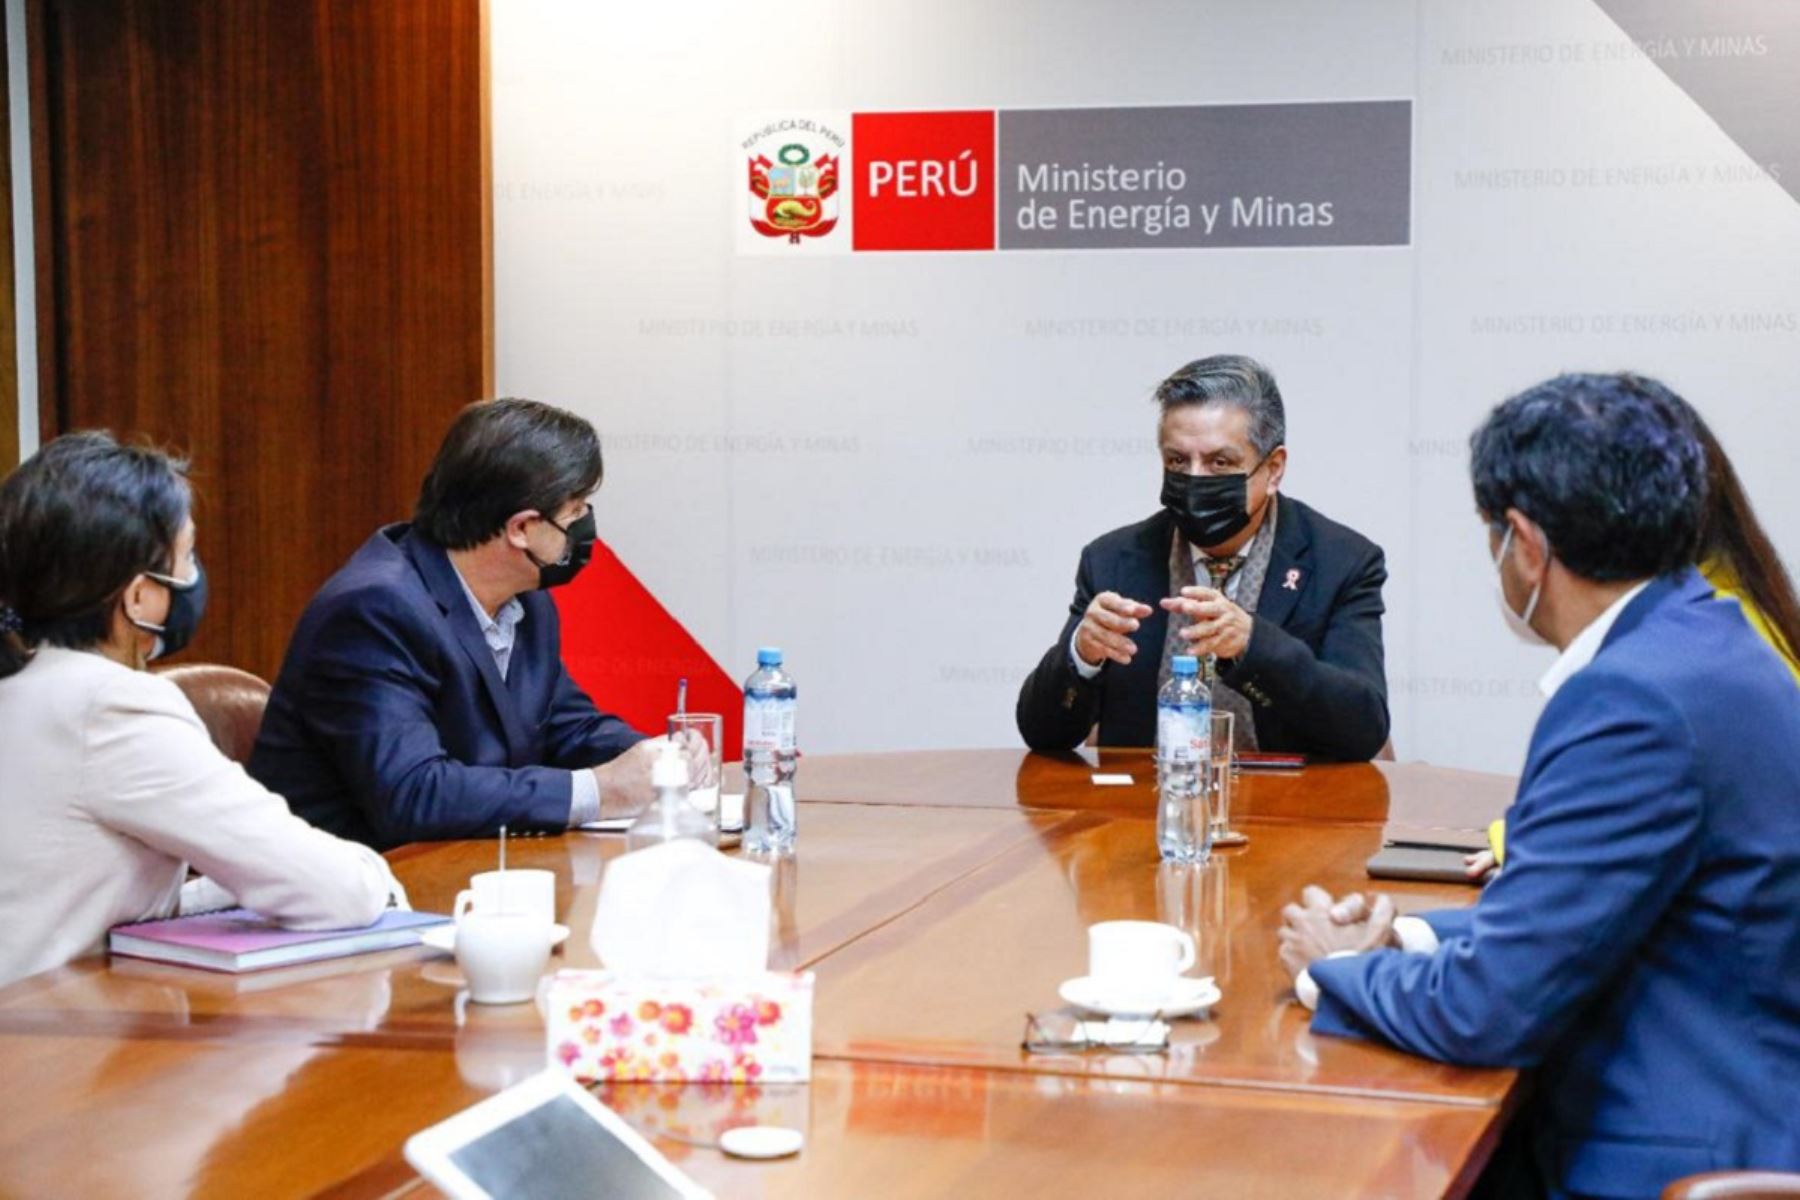 Ministro de Energía y Minas, Iván Merino, se reunió con los directivos de la Sociedad Peruana de Hidrocarburos (SPH). Foto: Cortesía.